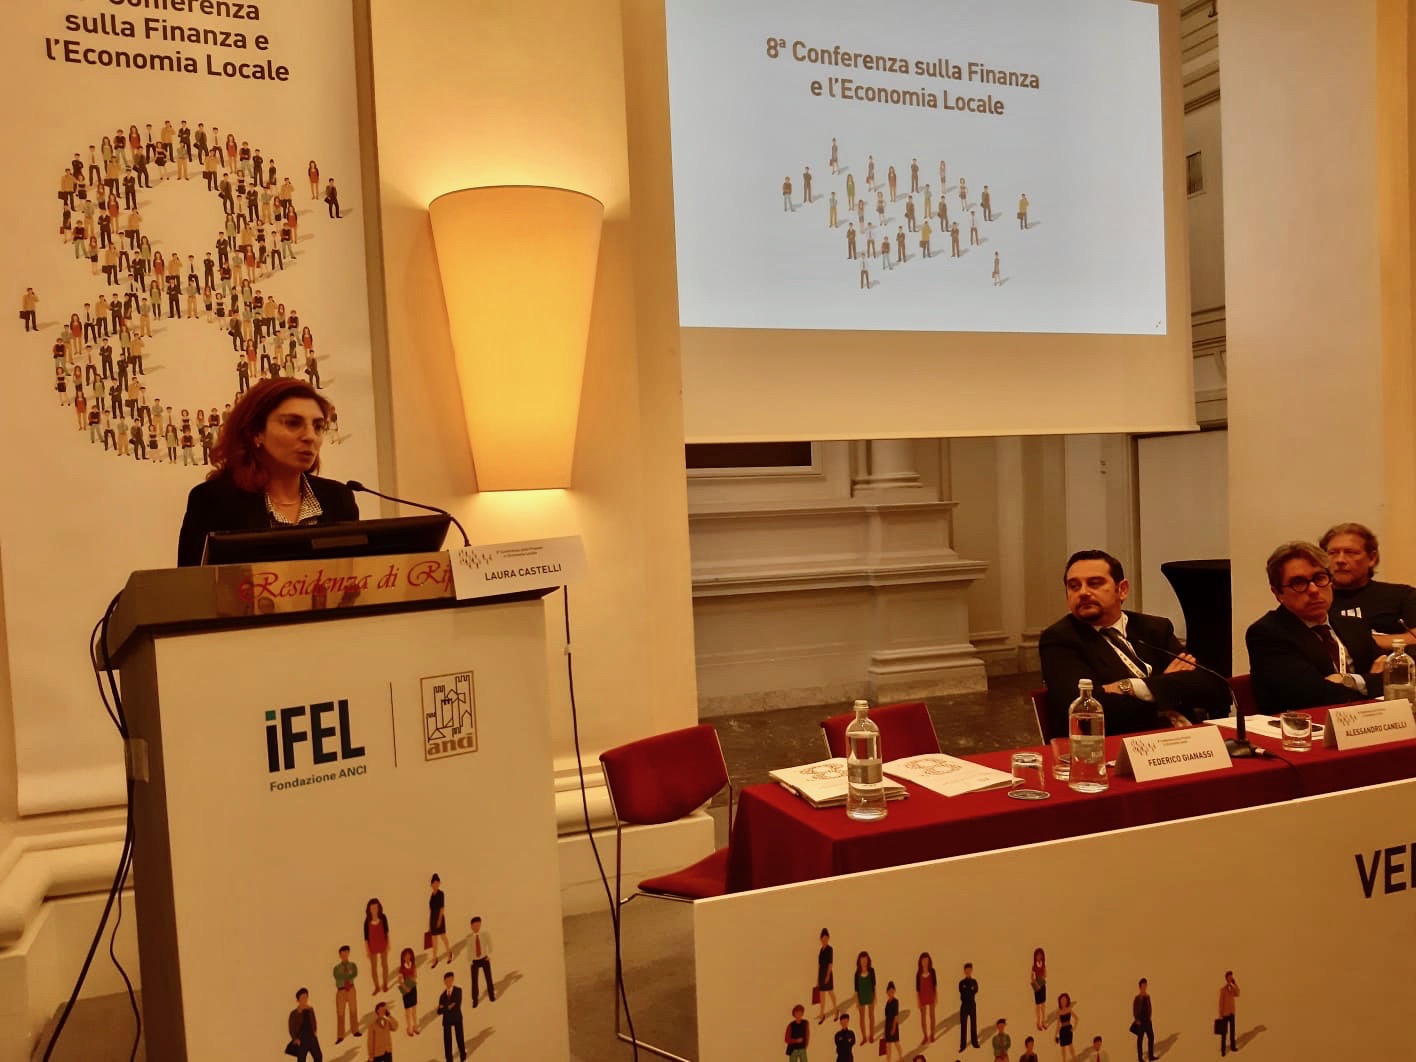 VIII Conferenza Ifel, Castelli: “Al lavoro su semplificazione e contabilità economico patrimoniale”